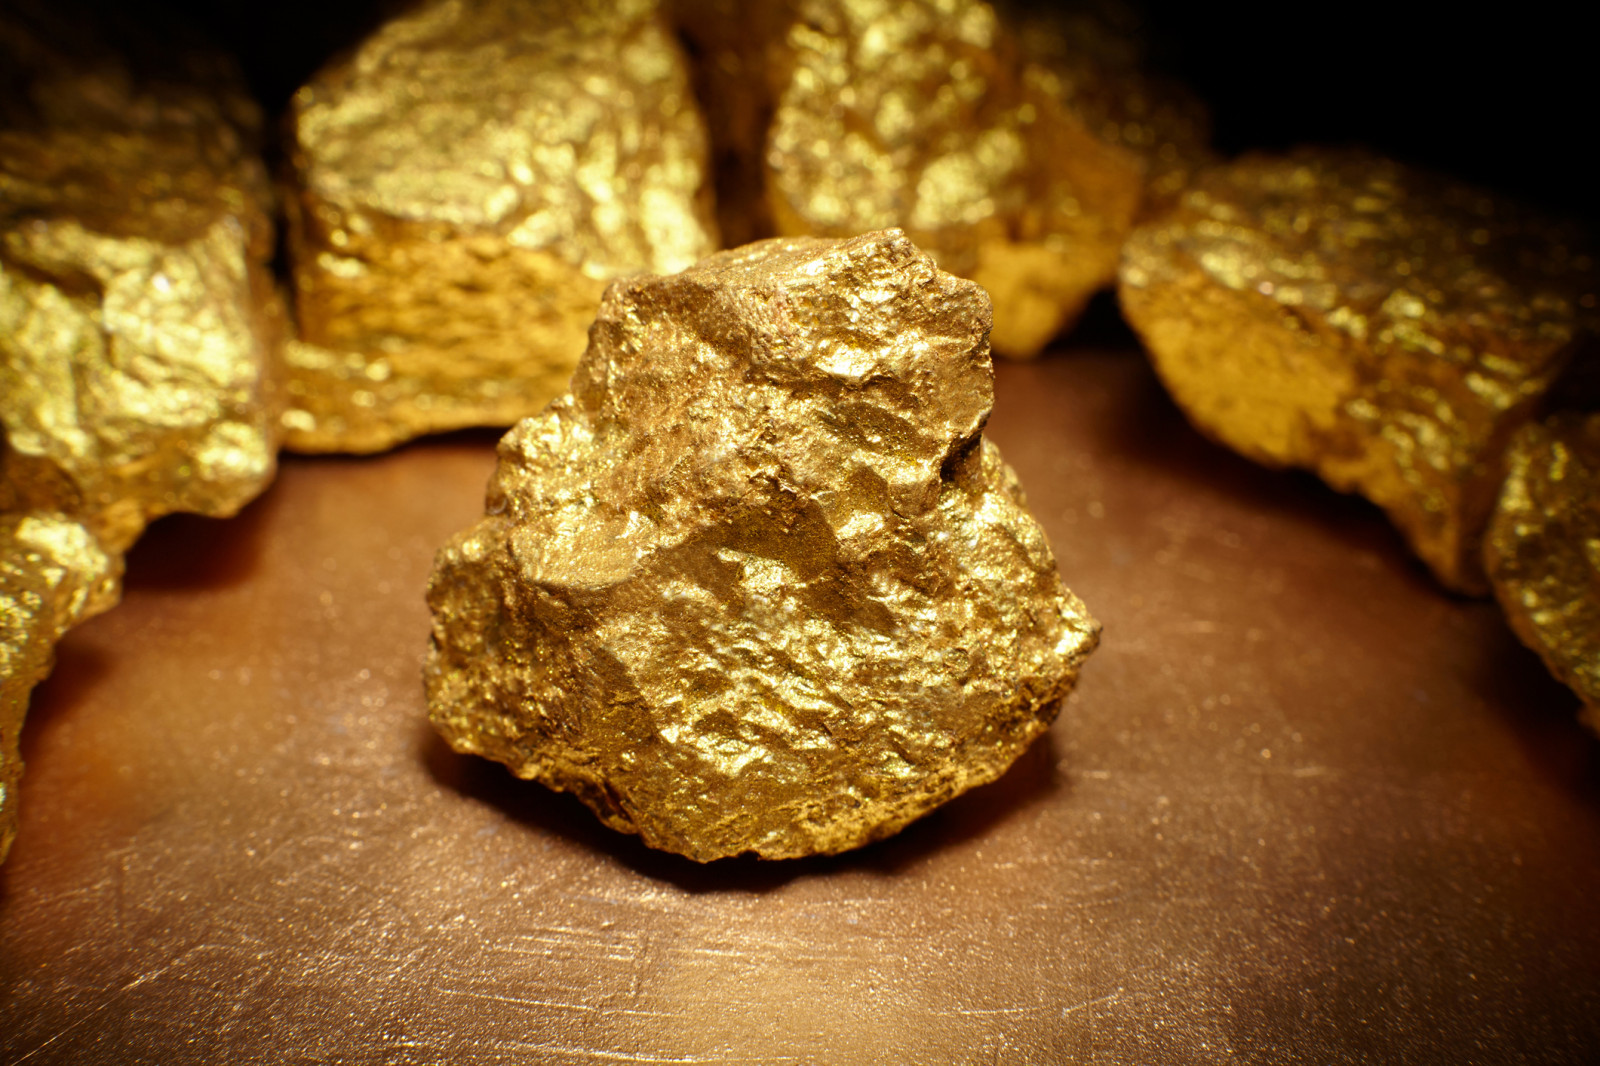 В Омск с Чукотки отправили 28 кг золота, но контейнер не доехал #Новости #Общество #Омск